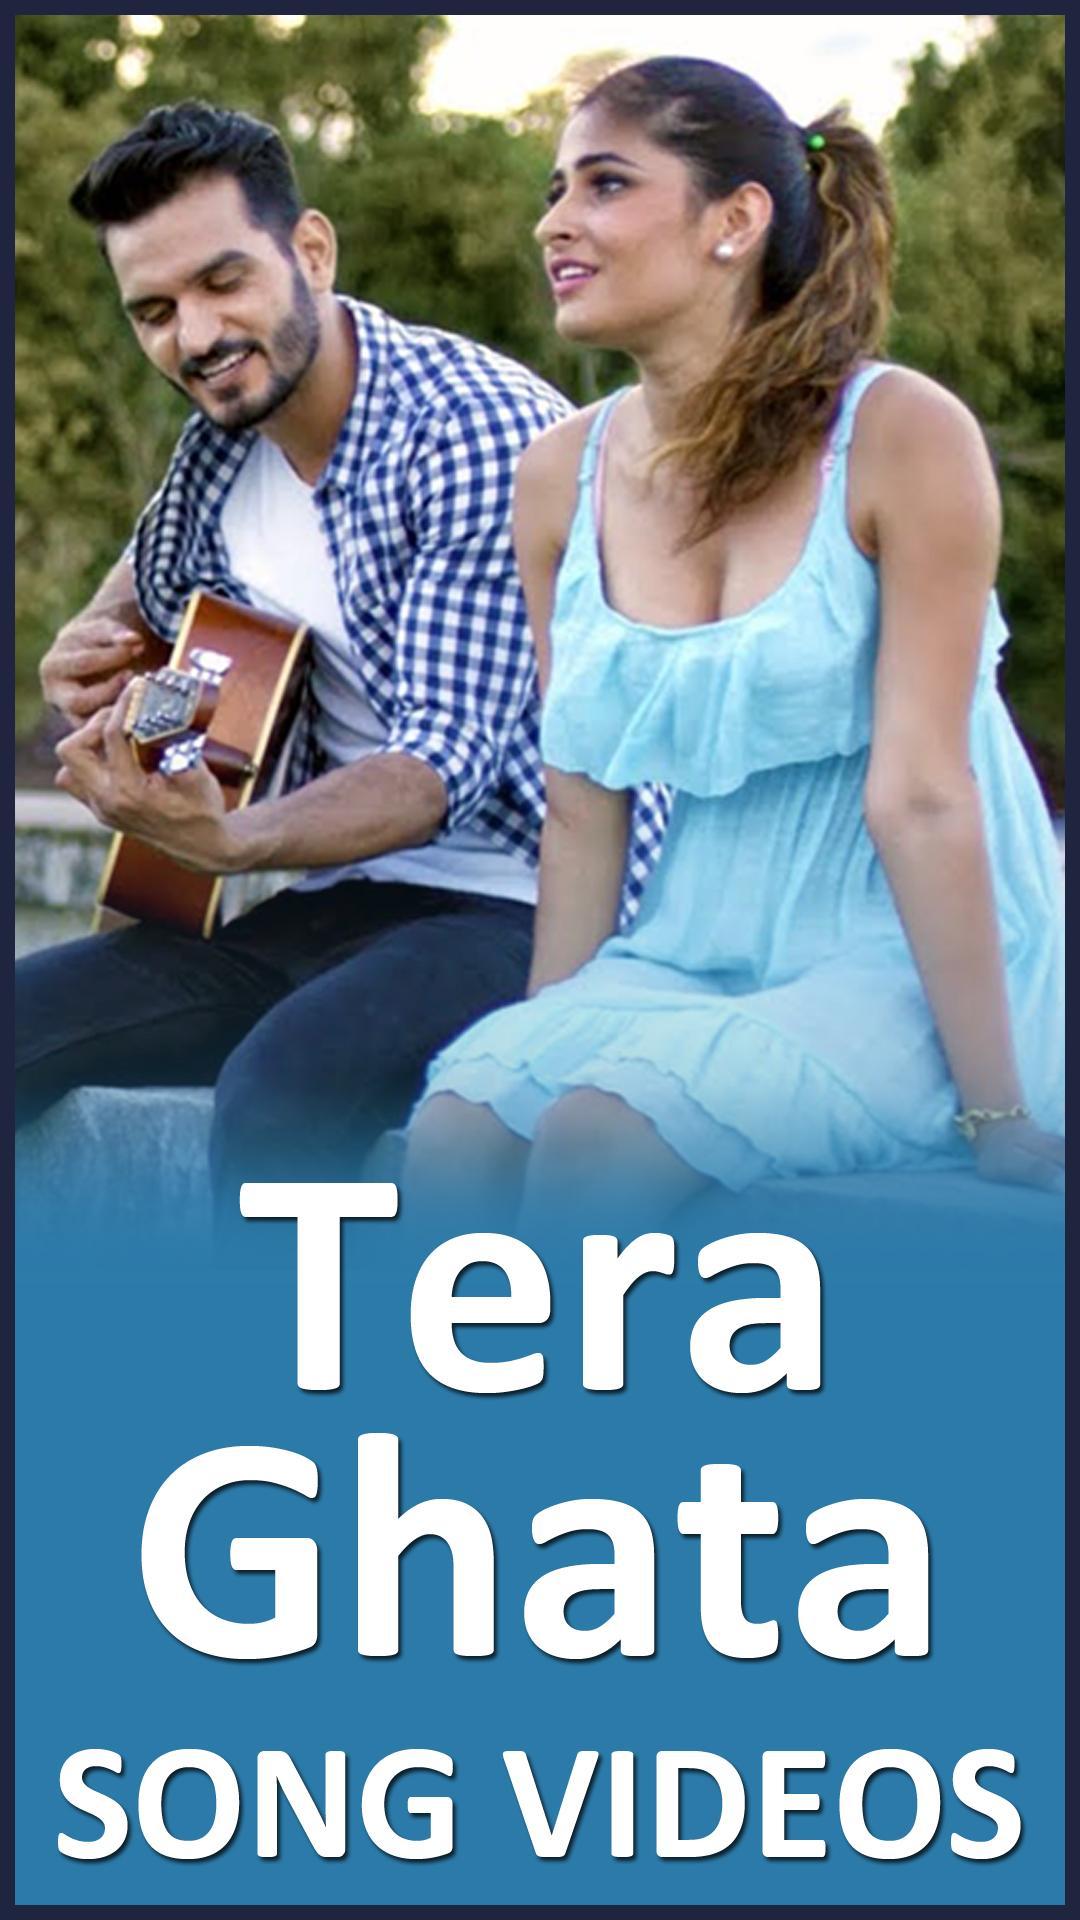 Tera Ghata Song - New Hindi Song - Gajendra Verma for Android - APK Download